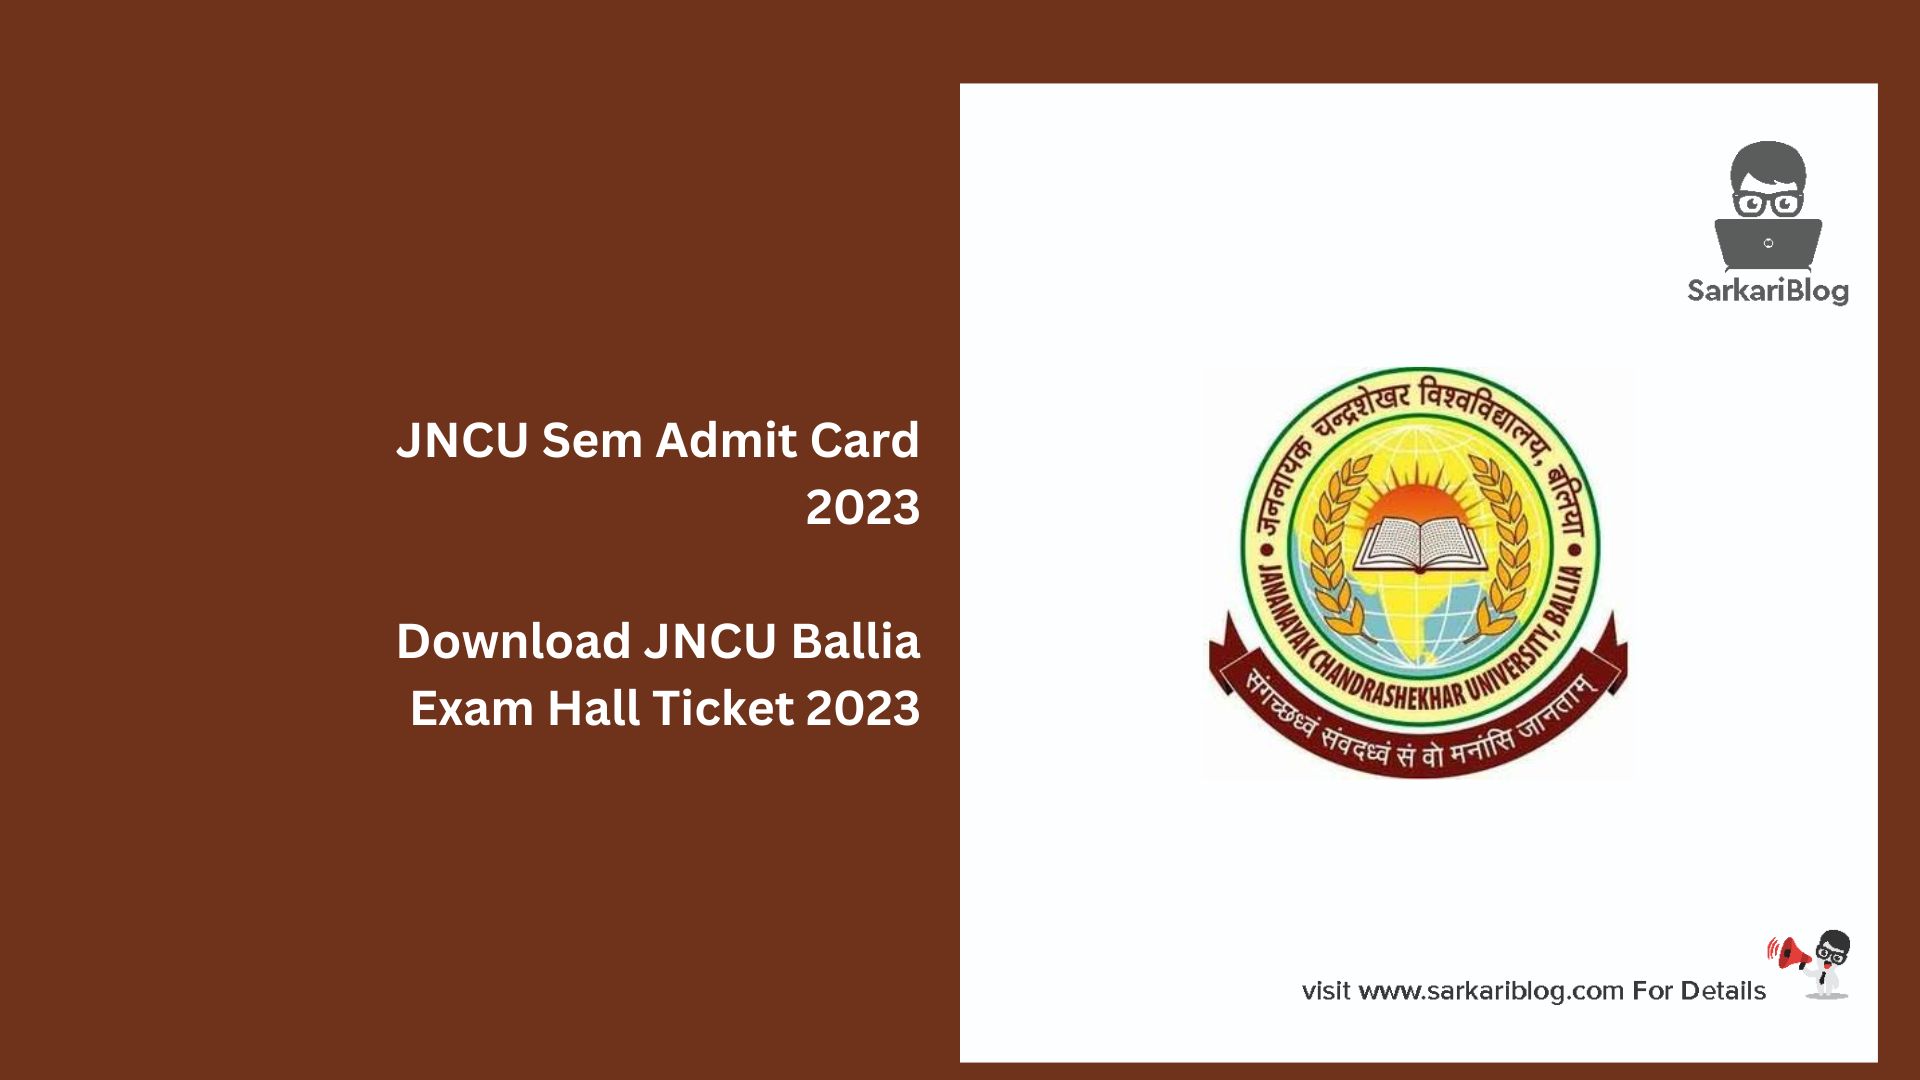 JNCU Sem Admit Card 2023